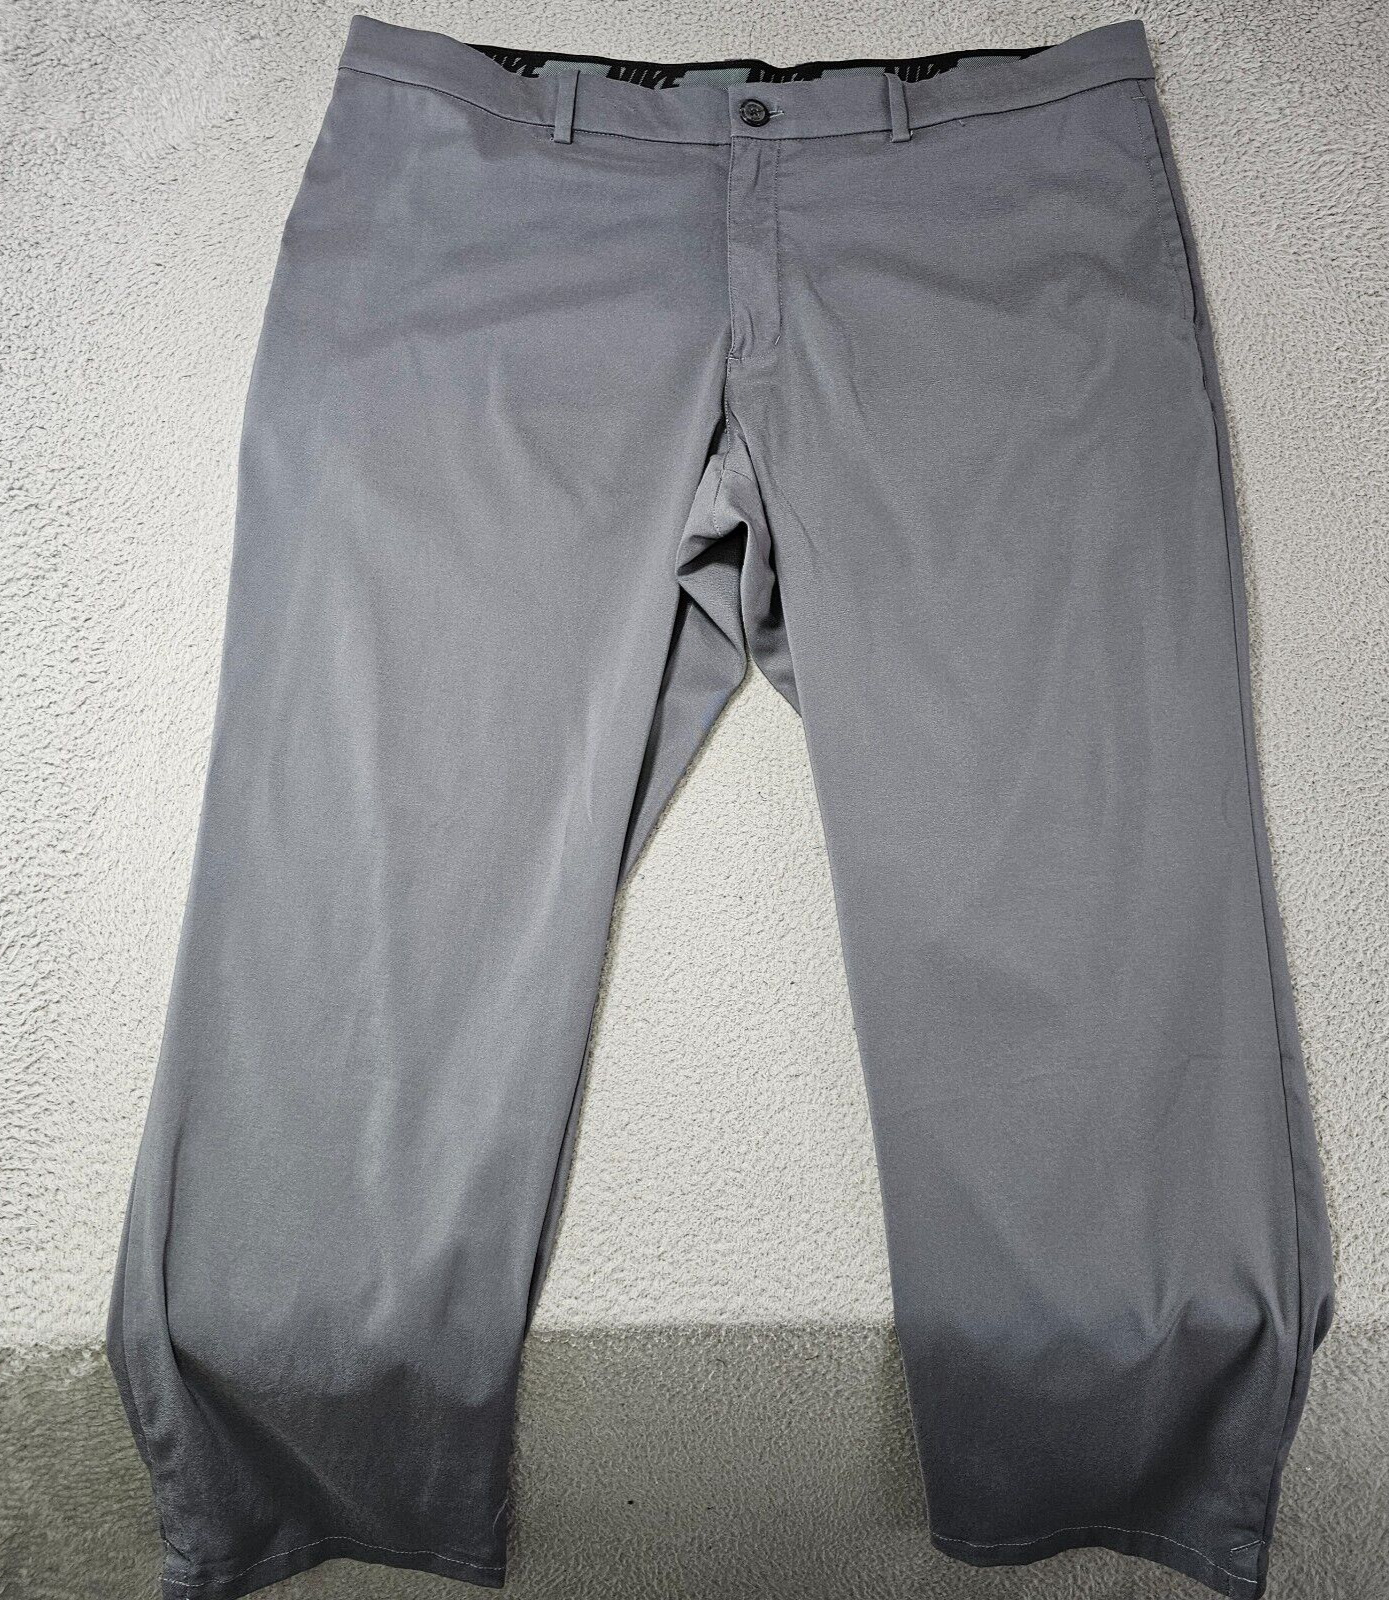 Nike Golf Men’s Standard Fit Flat Front Dri Fit Pants Smoke Grey Size 42x30